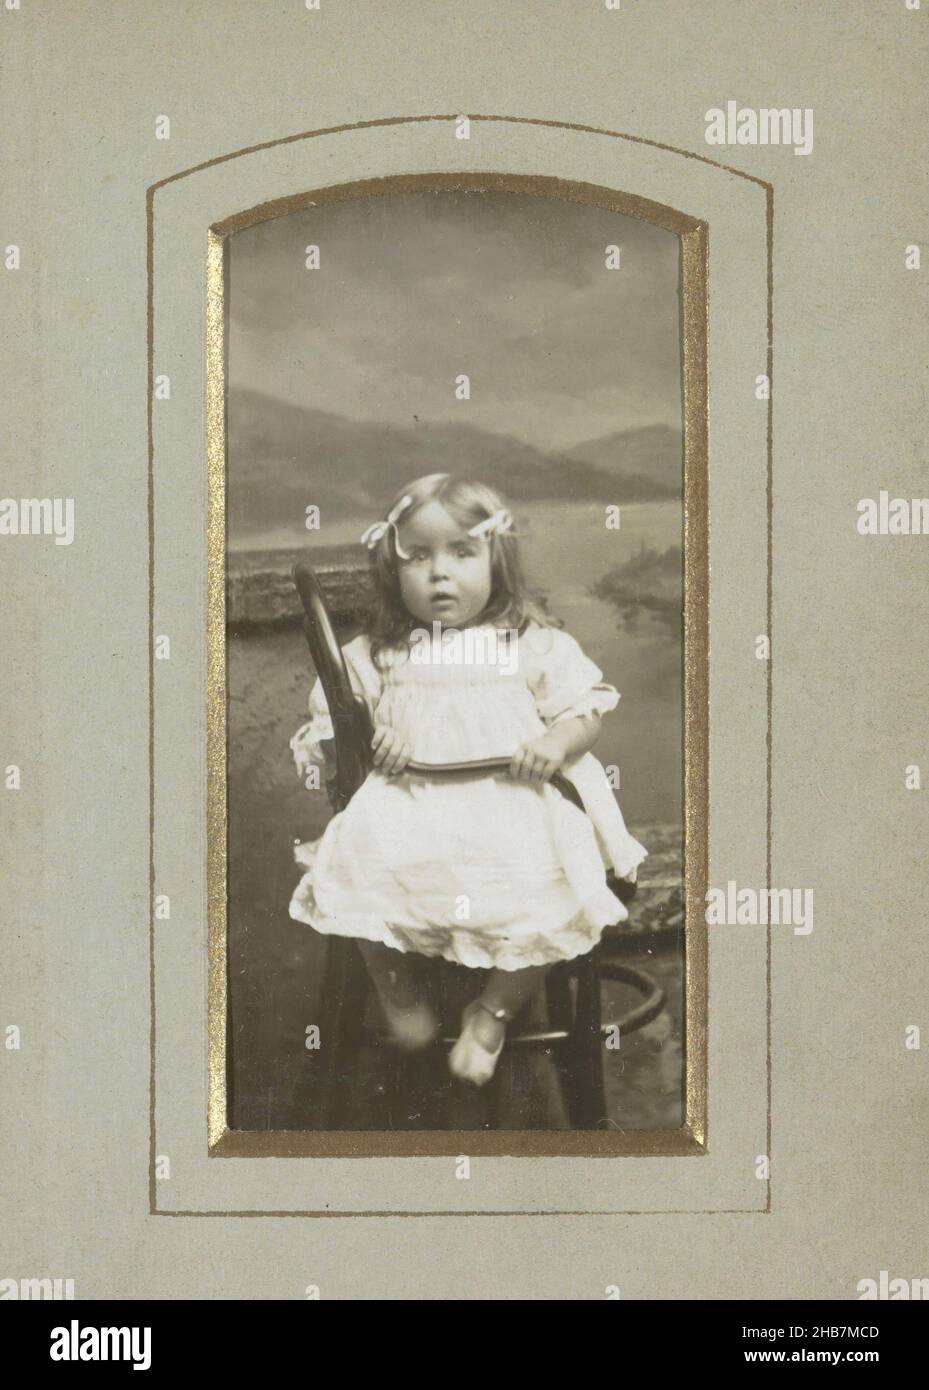 Portrait d'une jeune fille dans une robe, partie de l'album avec 12 photographies automatiques d'une famille anglaise., anonyme, Angleterre, c.1890 - c.1910, carton, papier, hauteur 62 mm × largeur 30 mm Banque D'Images